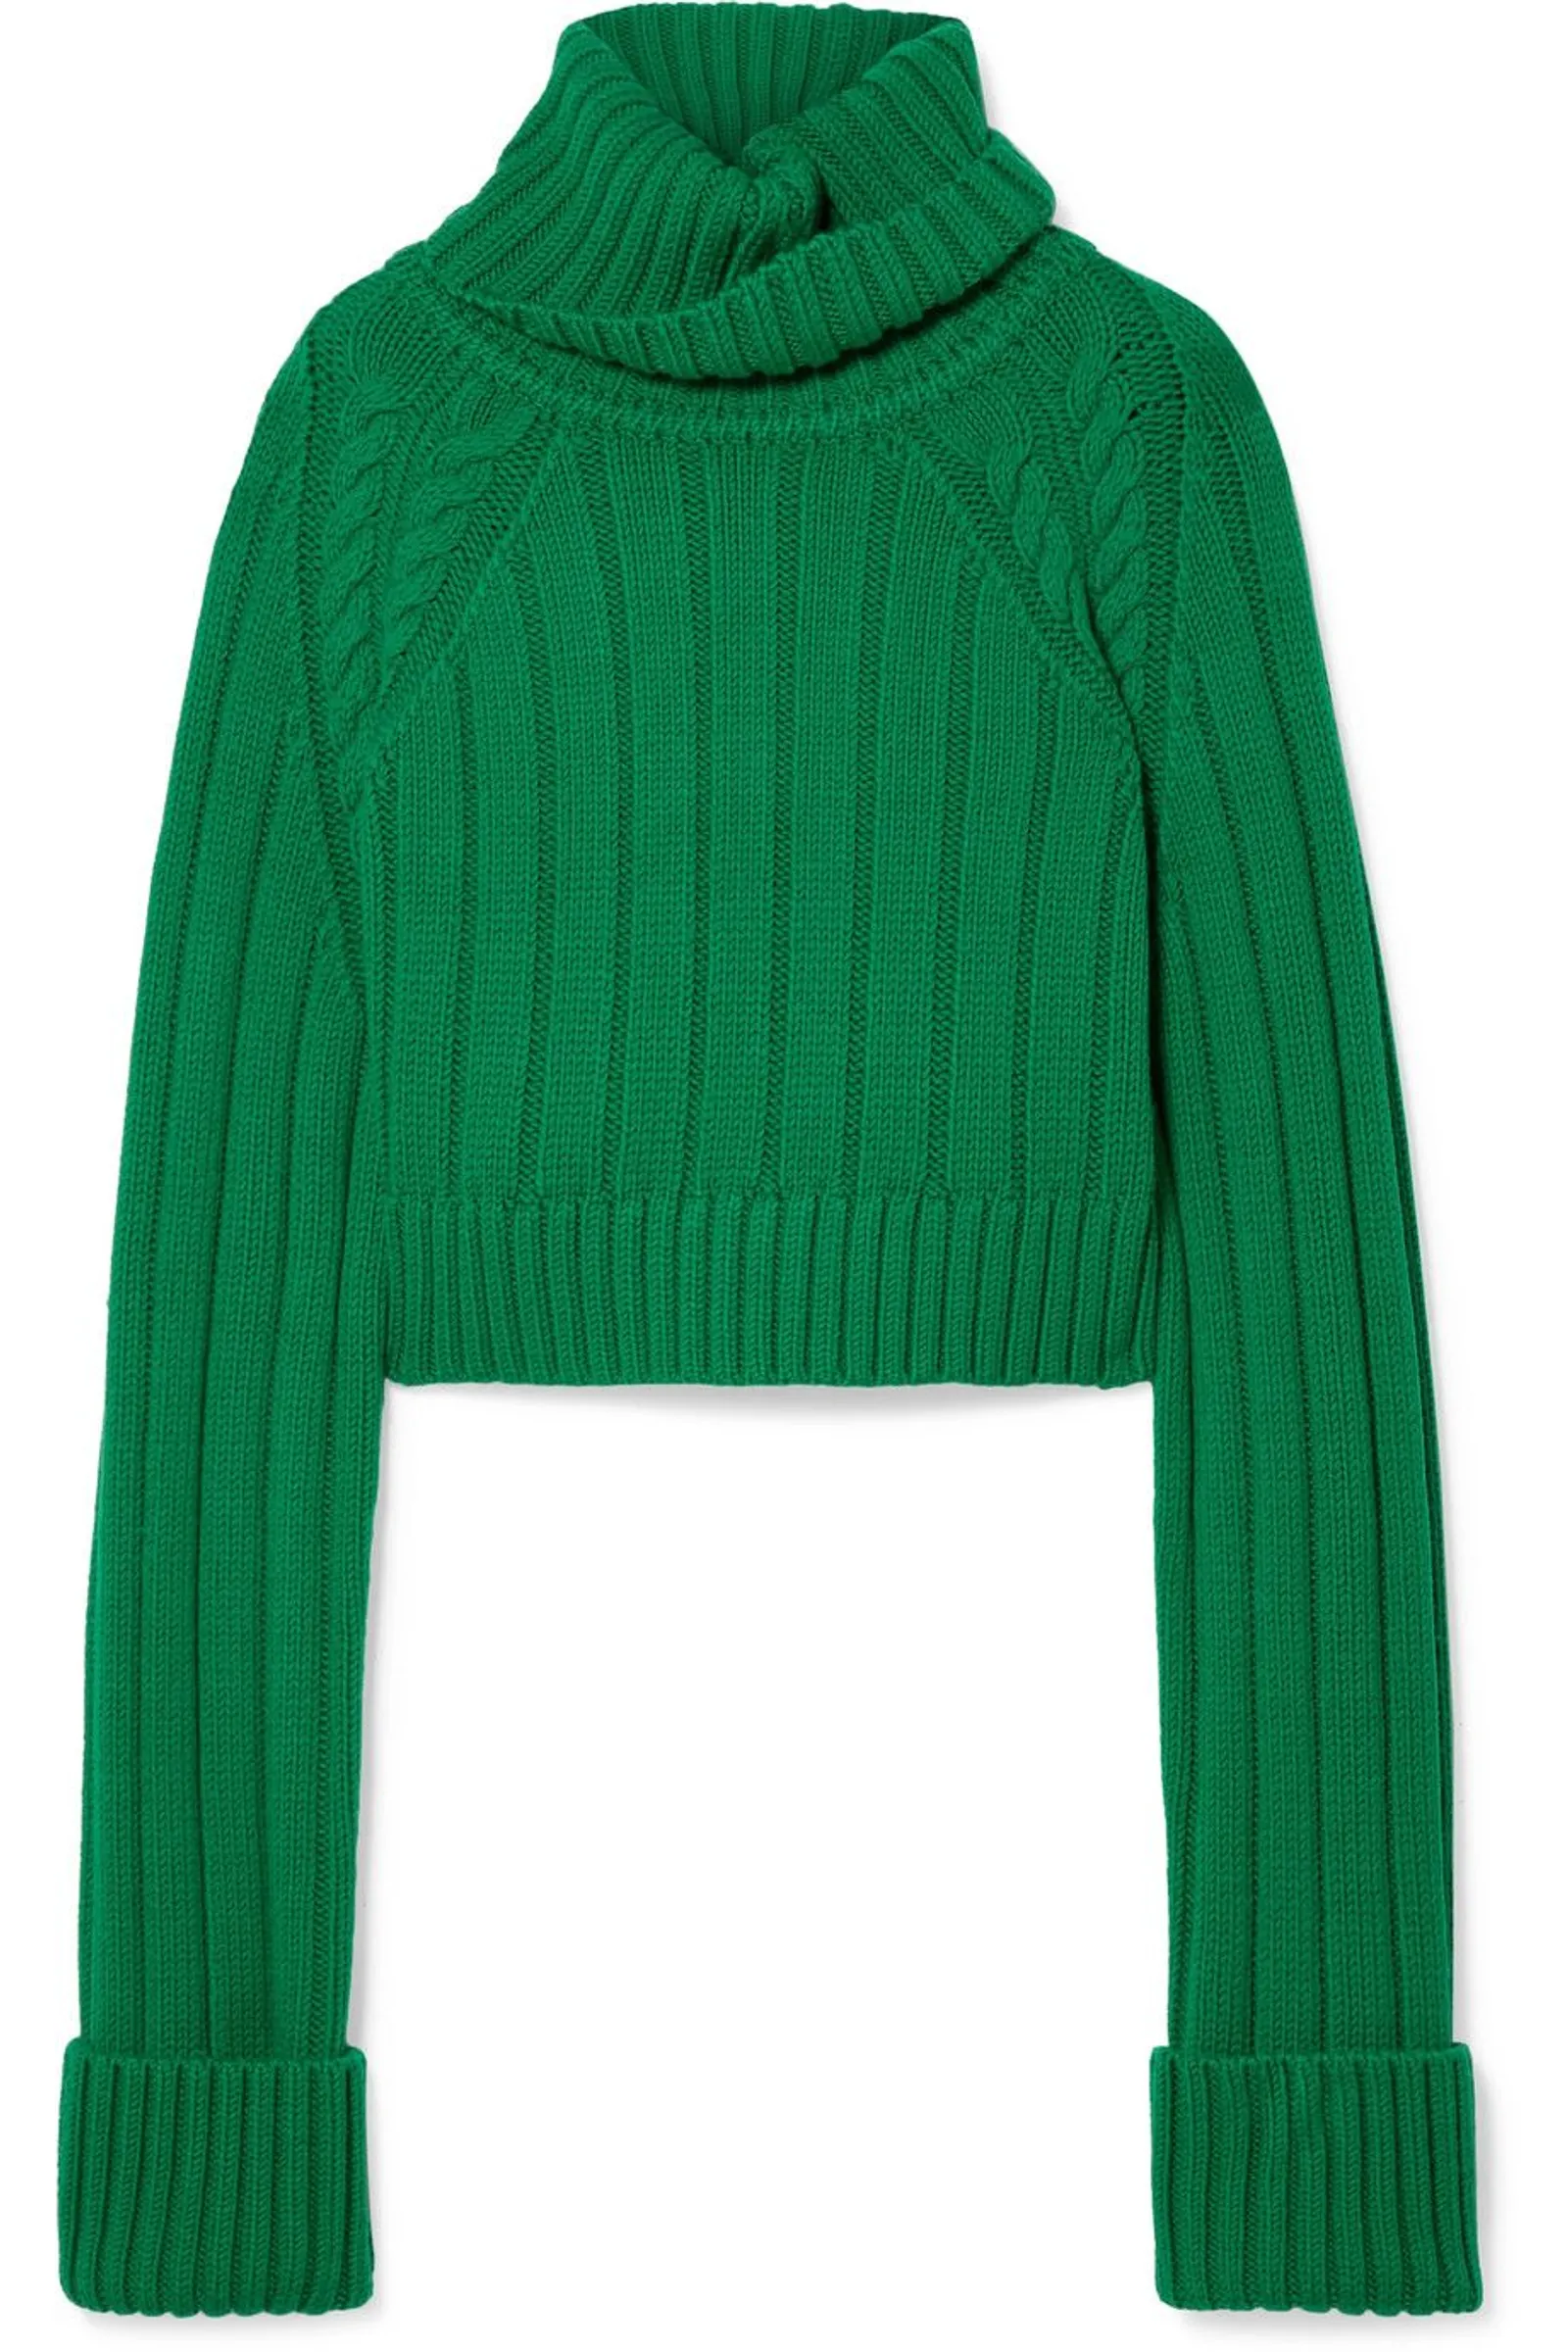 Sweater Warna Vibrant untuk OOTD yang Lebih Statement